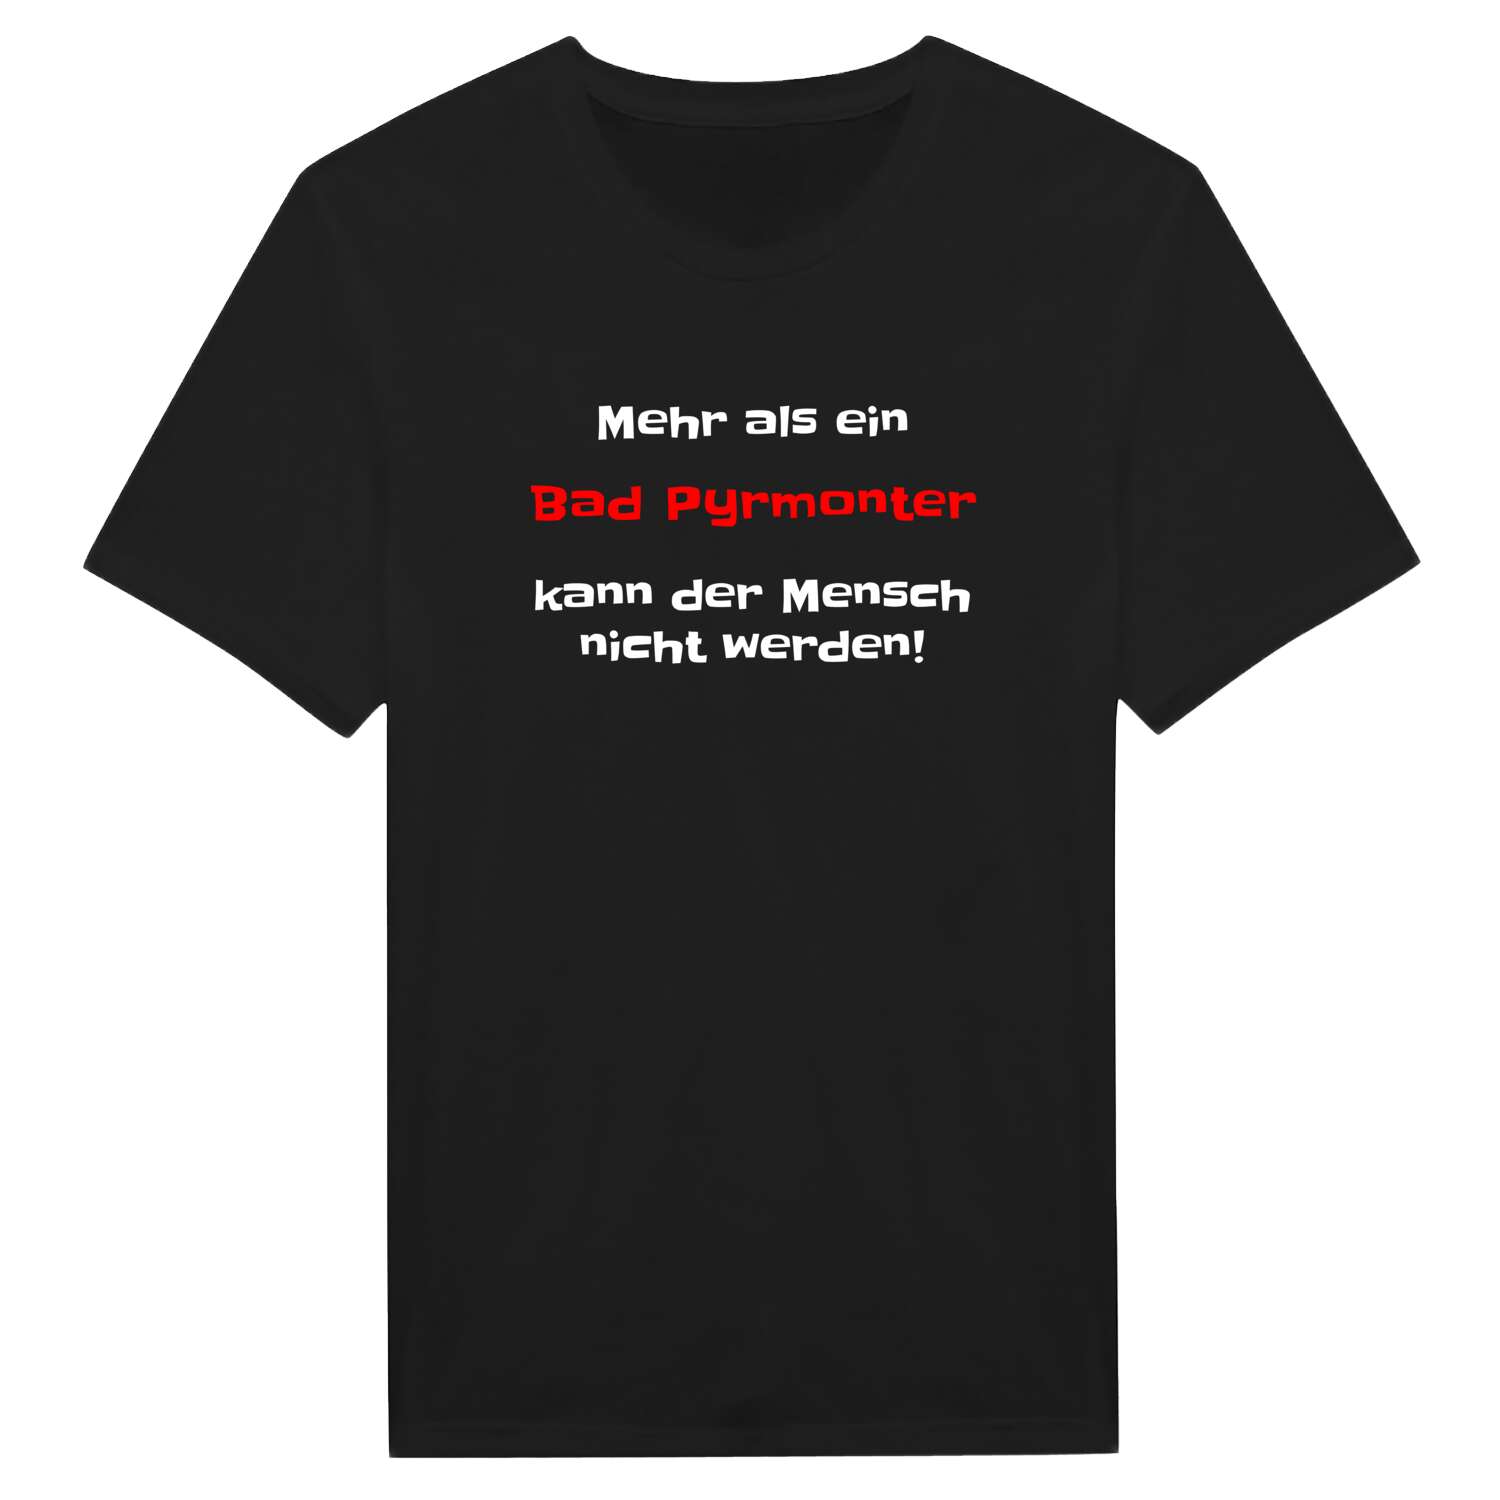 Bad Pyrmont T-Shirt »Mehr als ein«